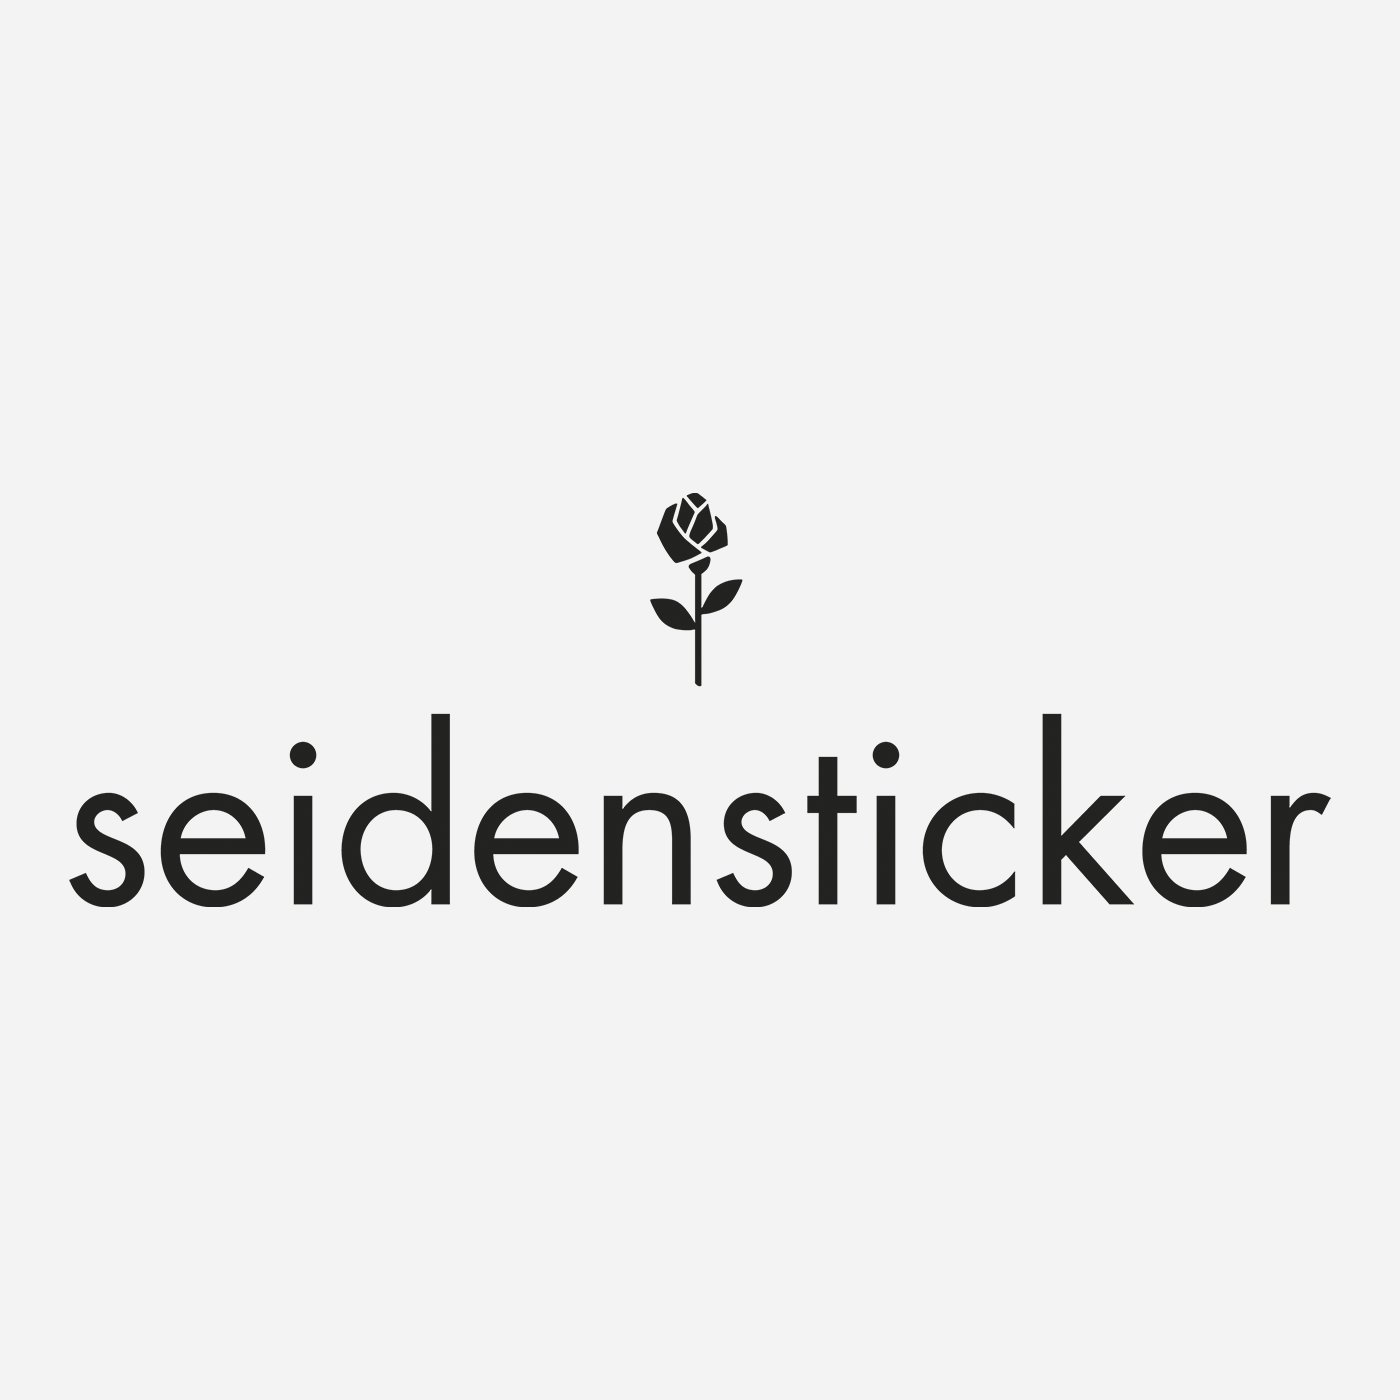 seidensticker logo značky